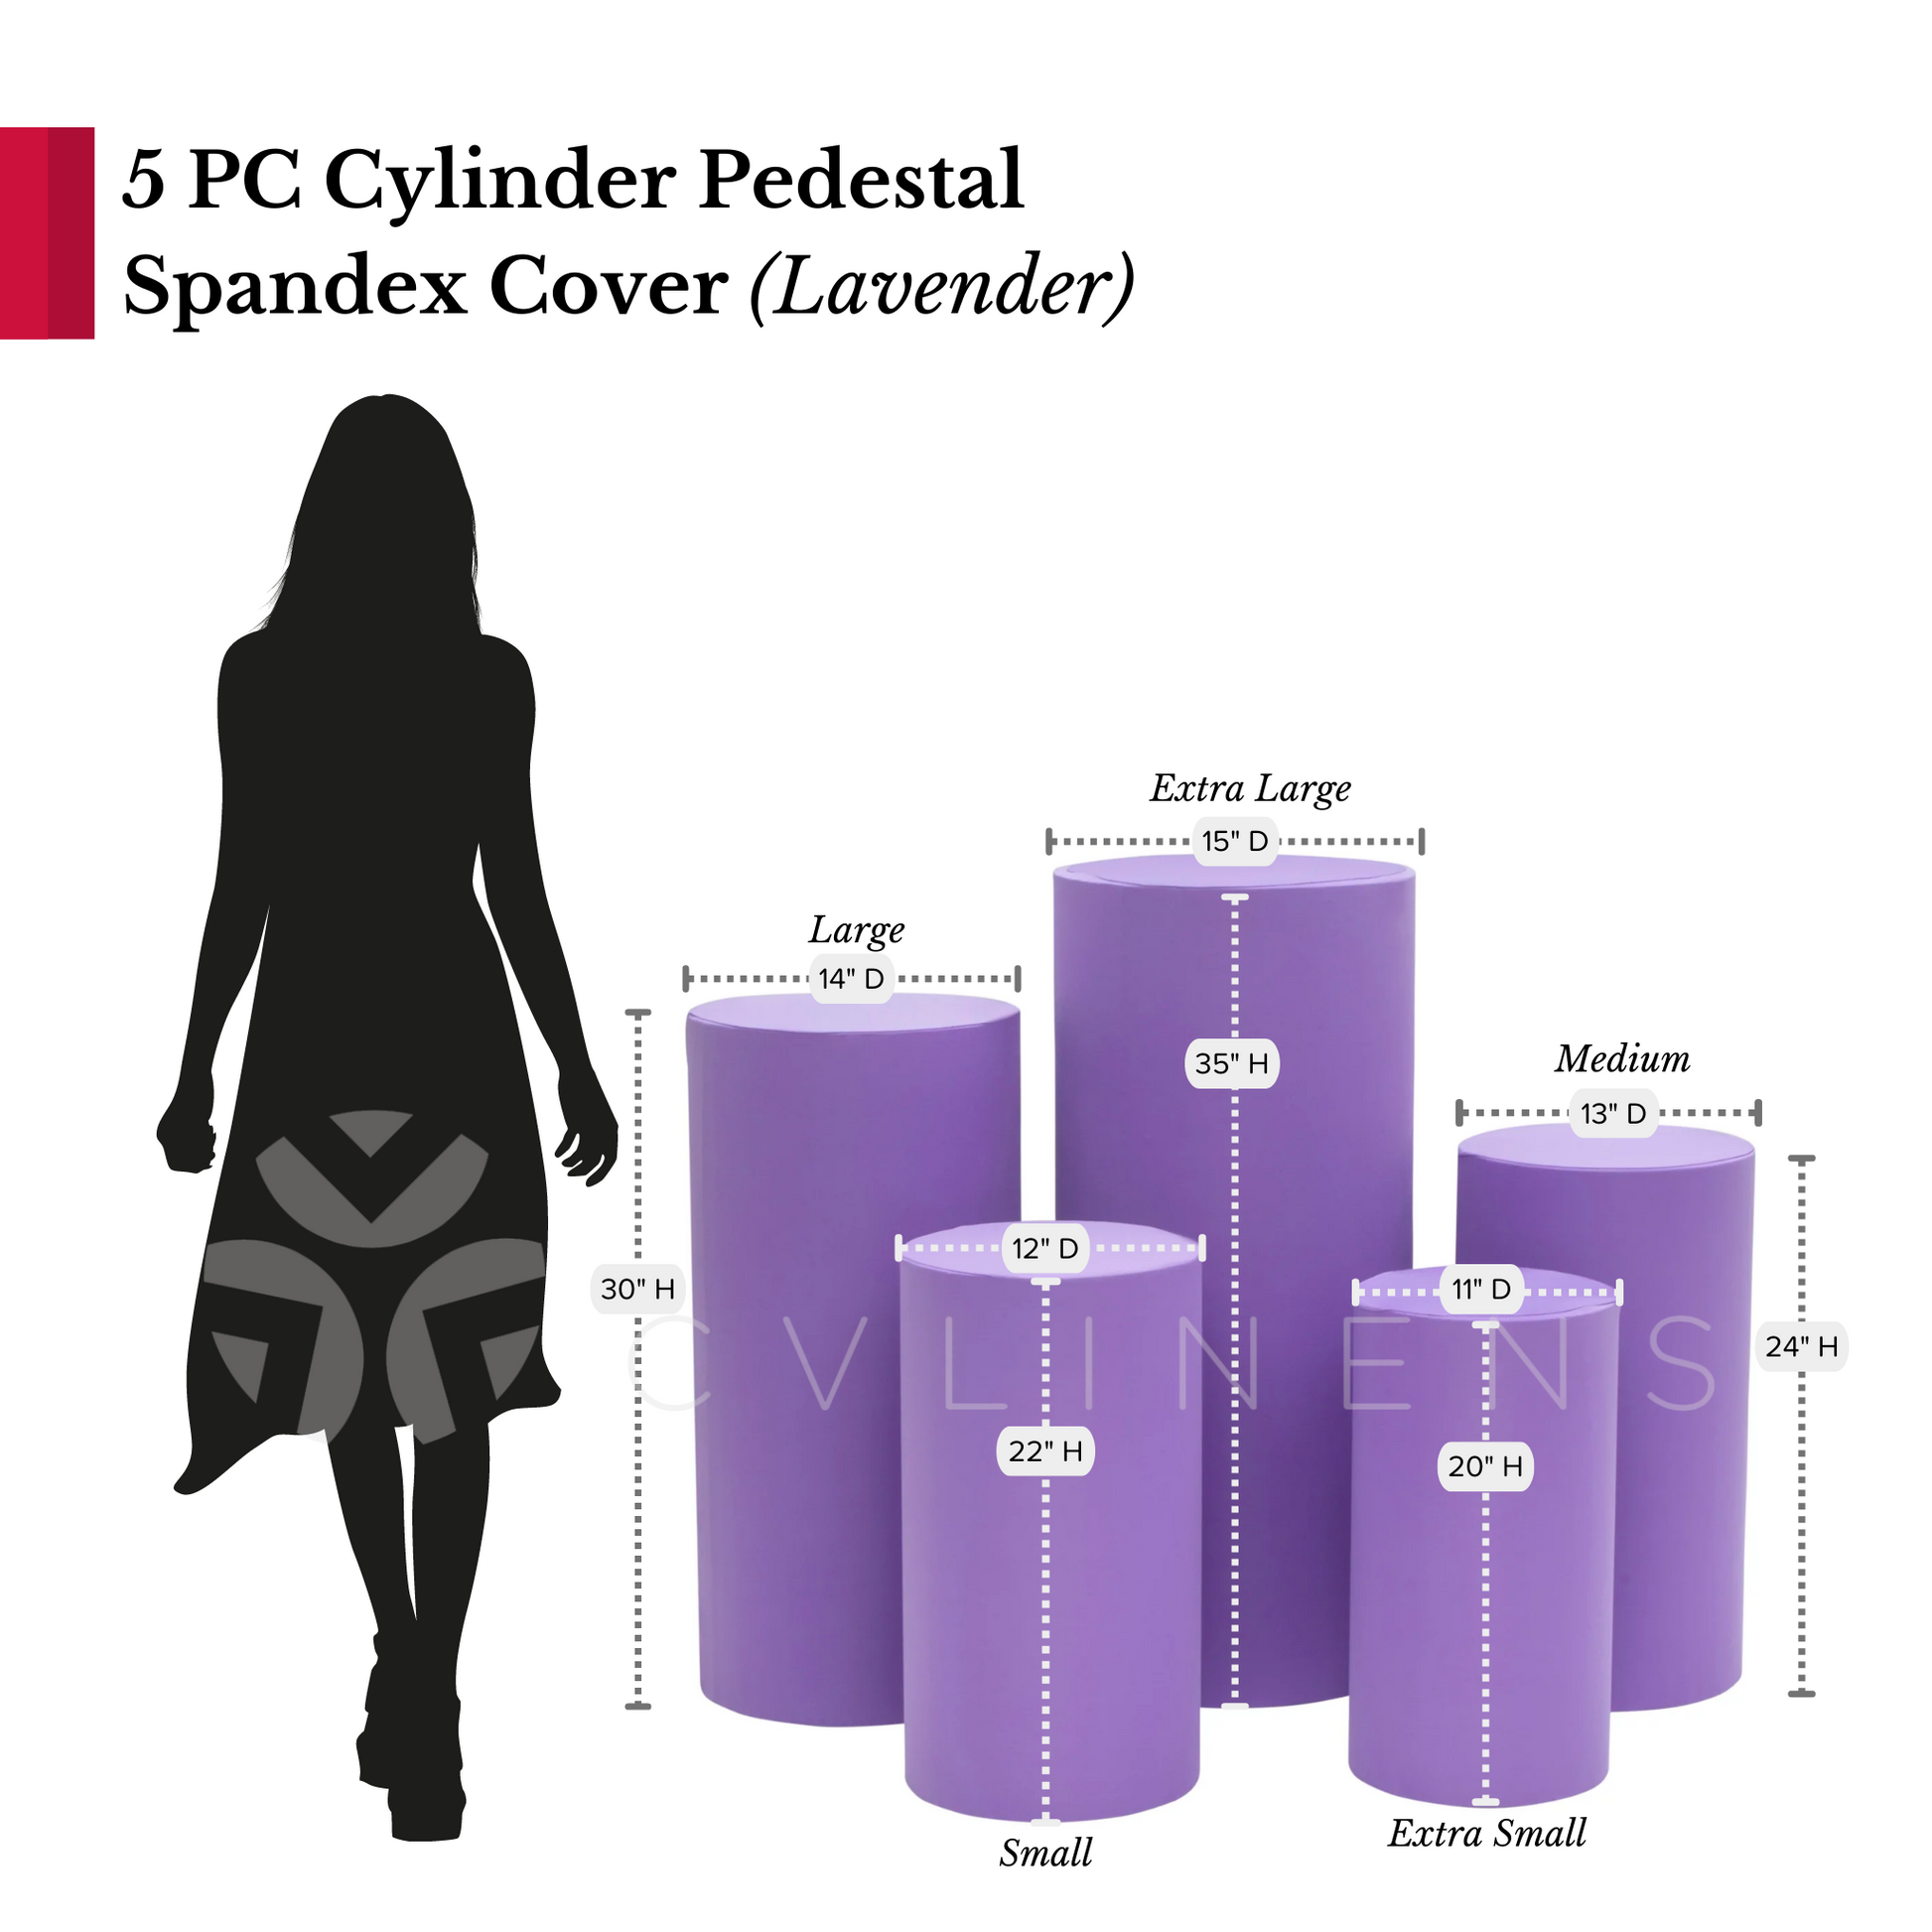 Spandex Pillar Covers for Metal Cylinder Pedestal Stands 5 pcs/set - Lavender